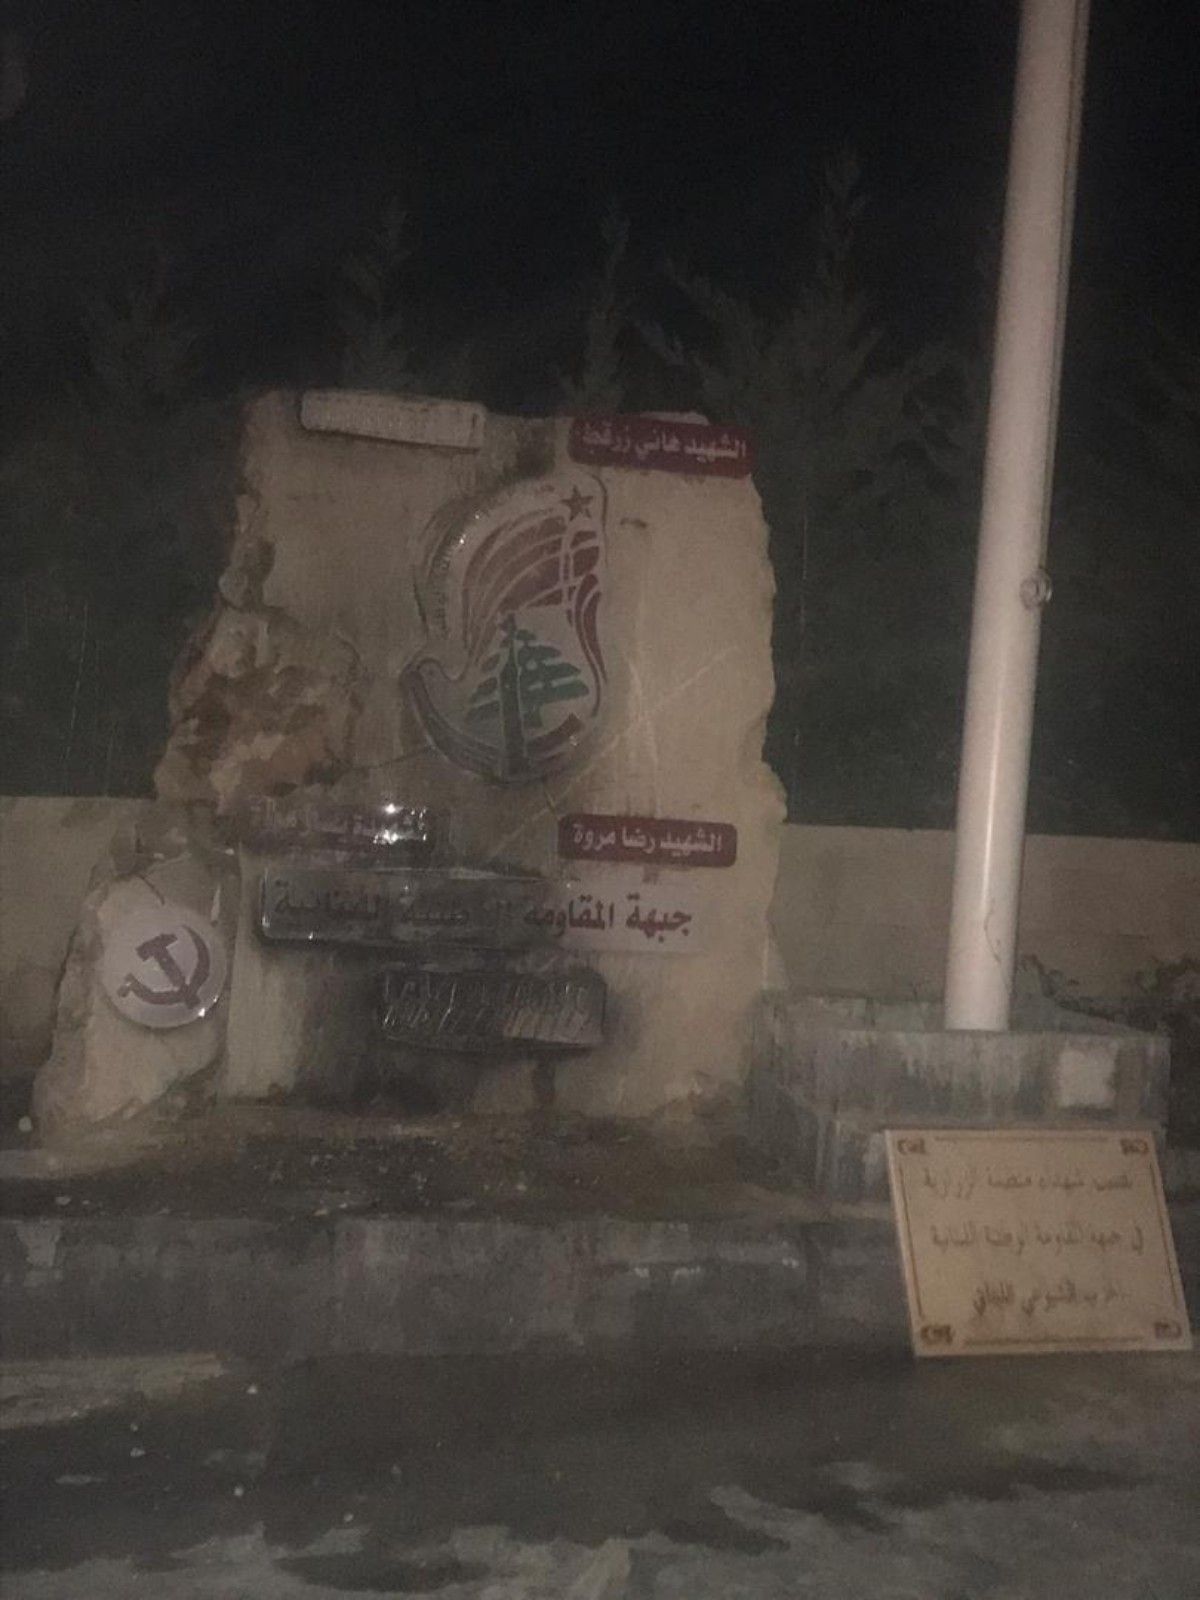 #بالصور إحراق مجسم شهداء جبهة المقاومة الوطنية اللبنانية في بلدة الزرارية.